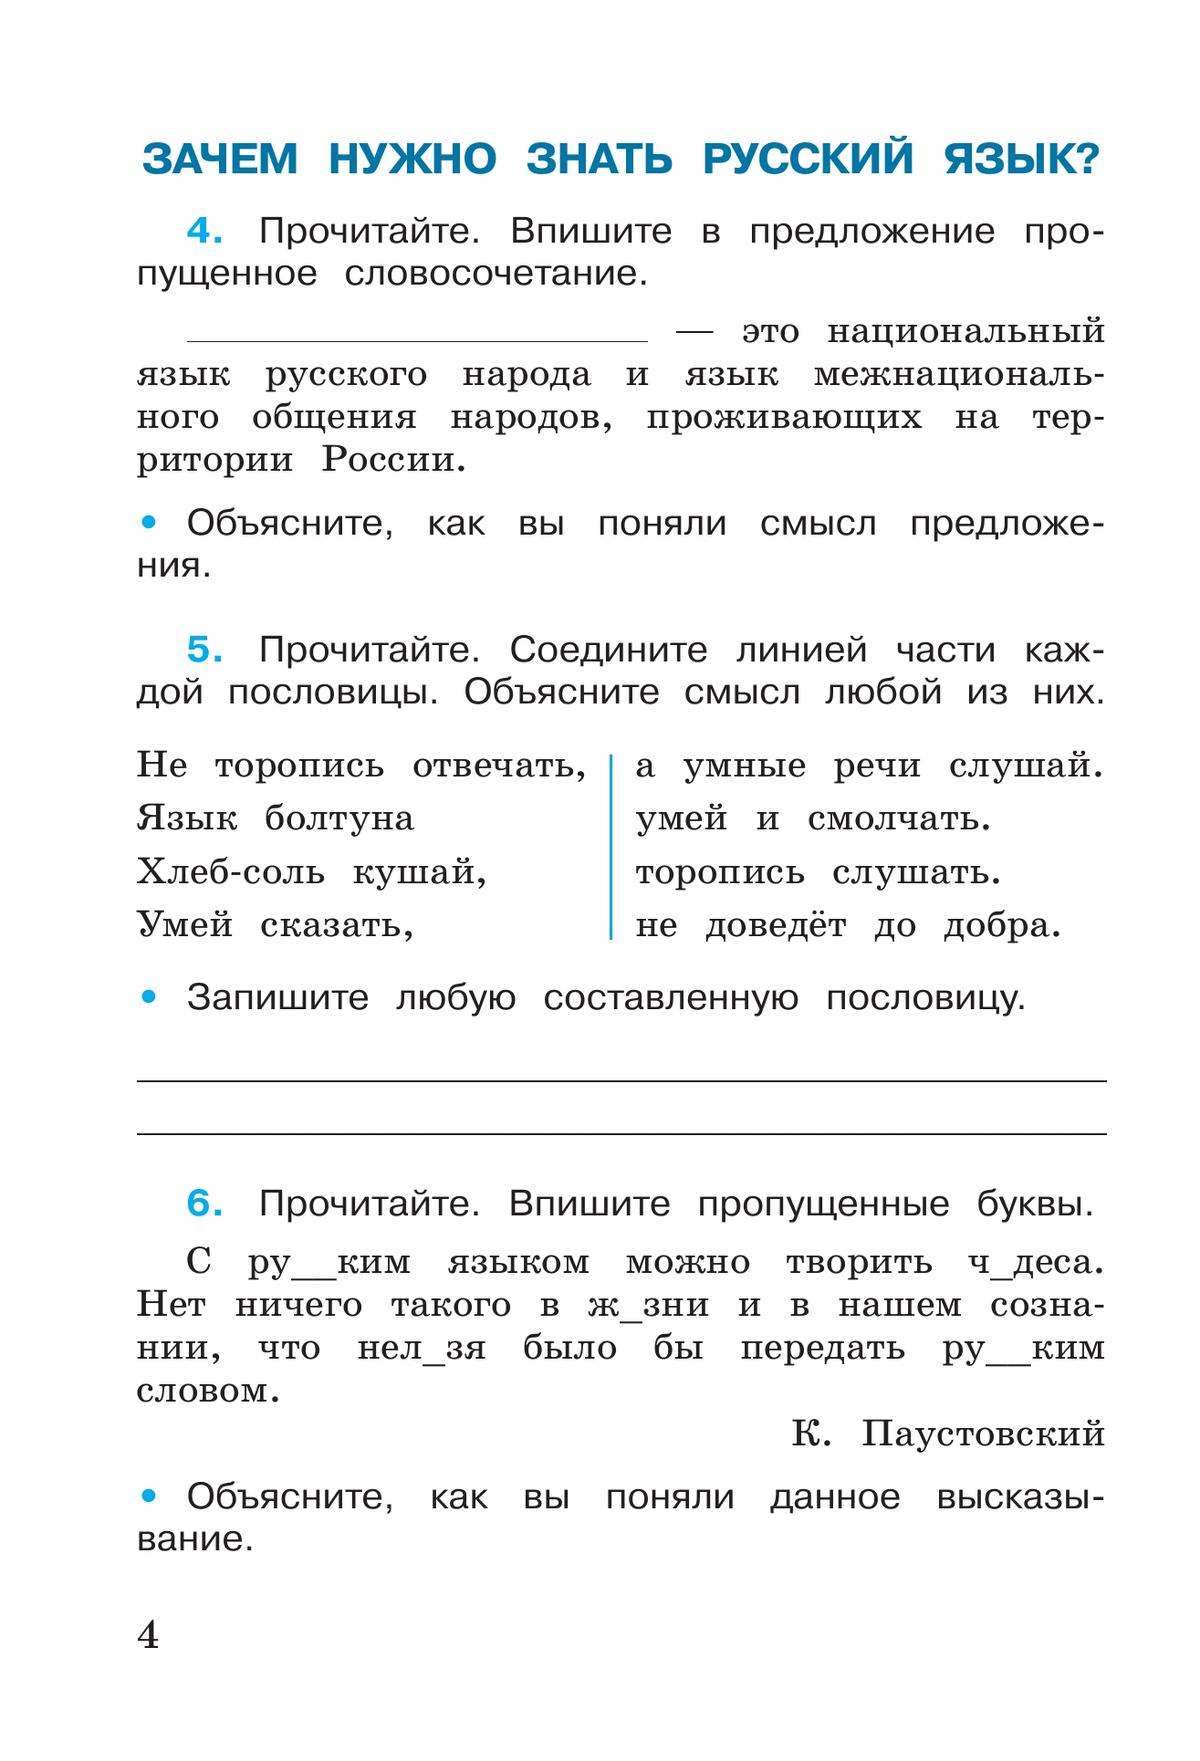 Русский язык. Рабочая тетрадь. 3 класс. В 2-х ч. Ч. 1 7